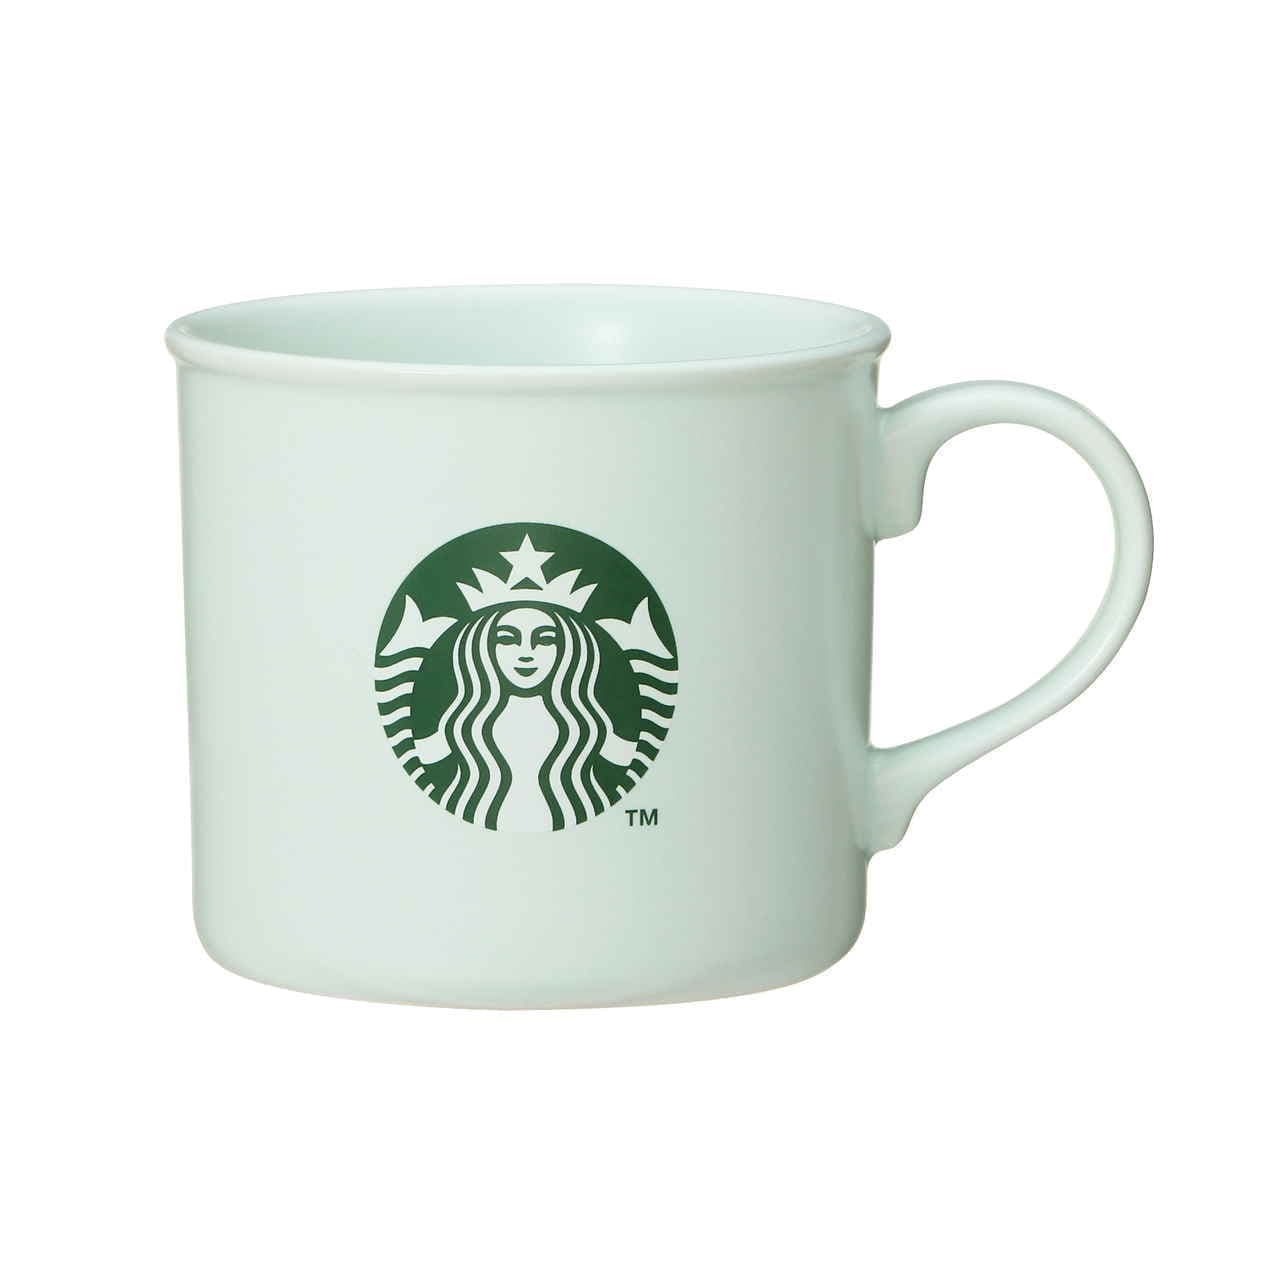 Starbucks Mug Light Green 296ml